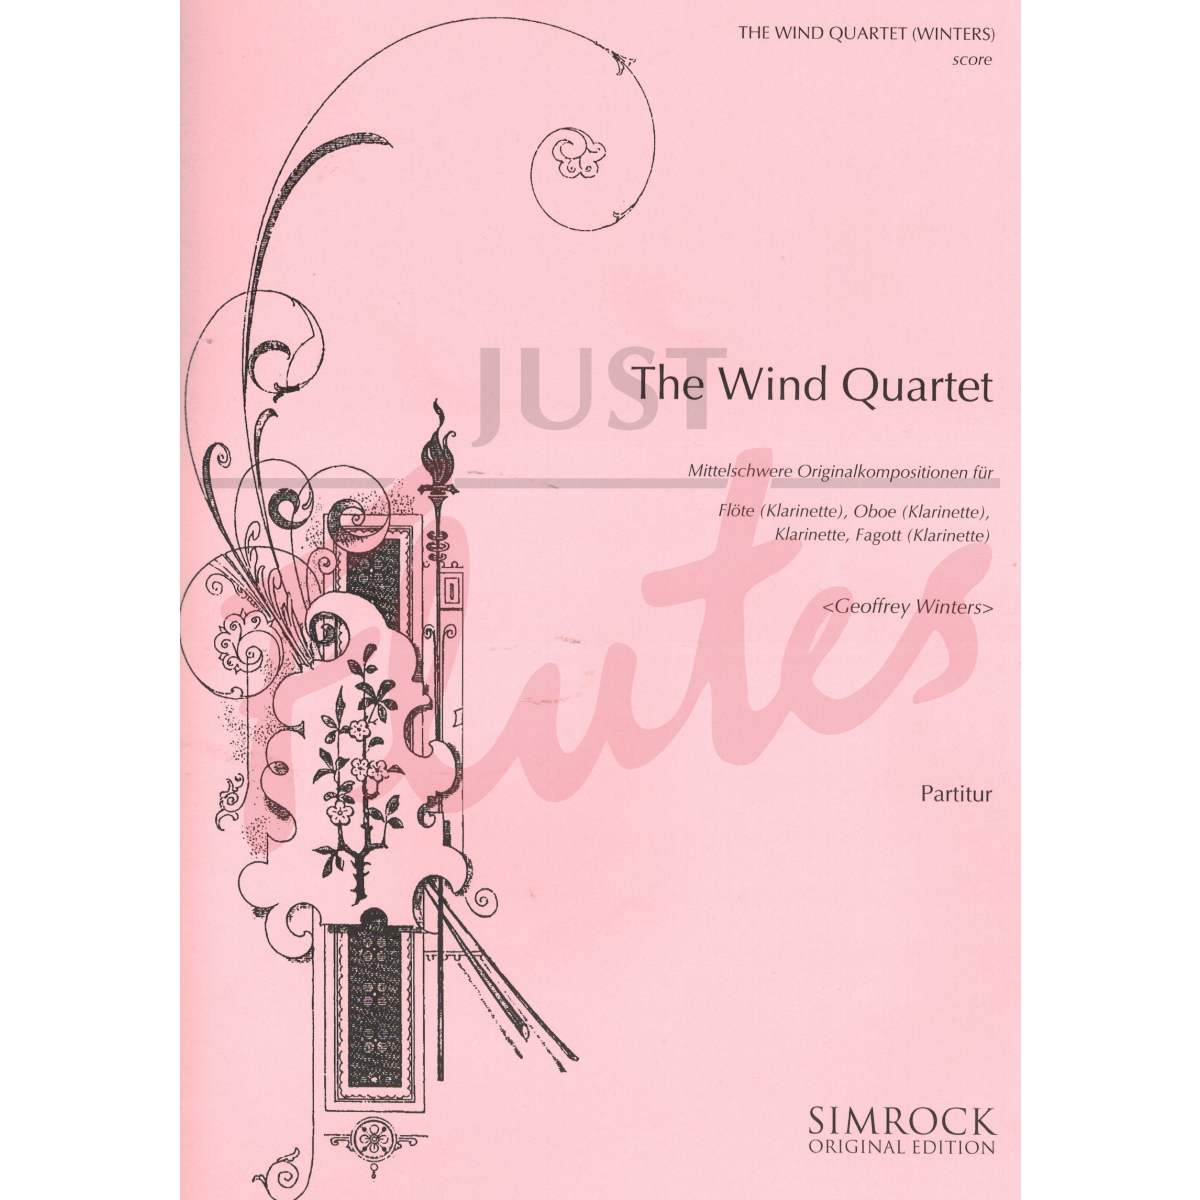 The Wind Quartet